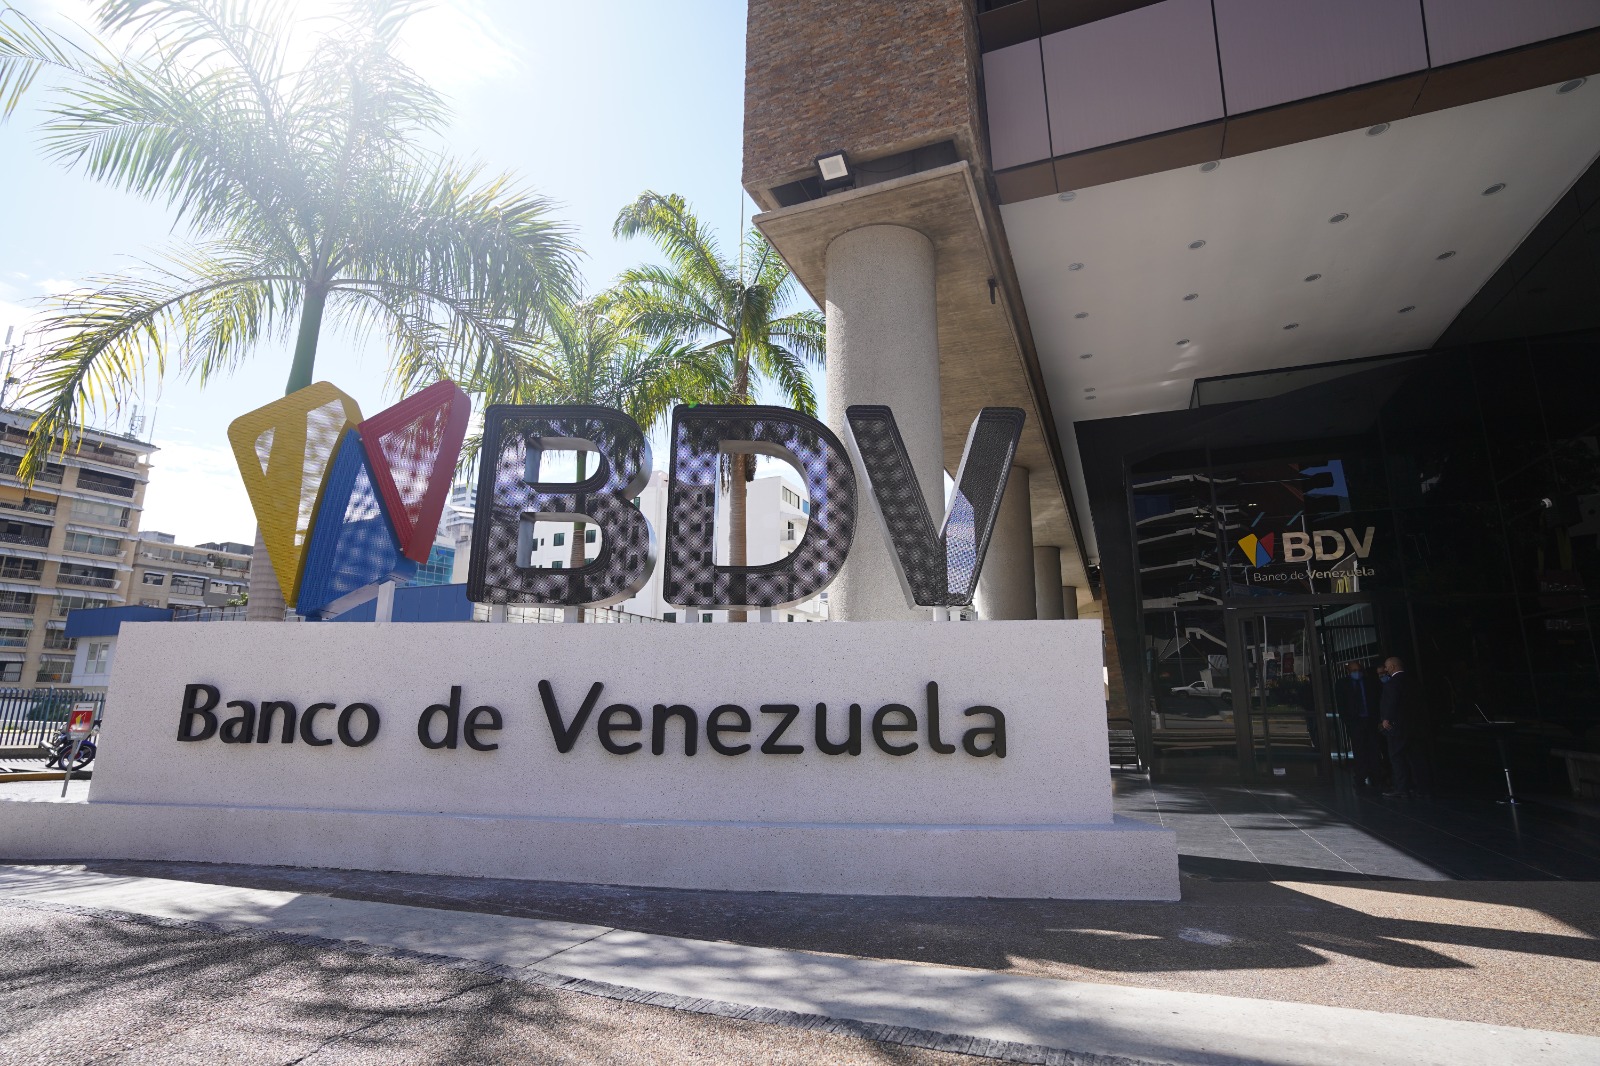 Banco de Venezuela entregará tarjetas con nueva tecnología a sus clientes a partir de julio (+Detalles)